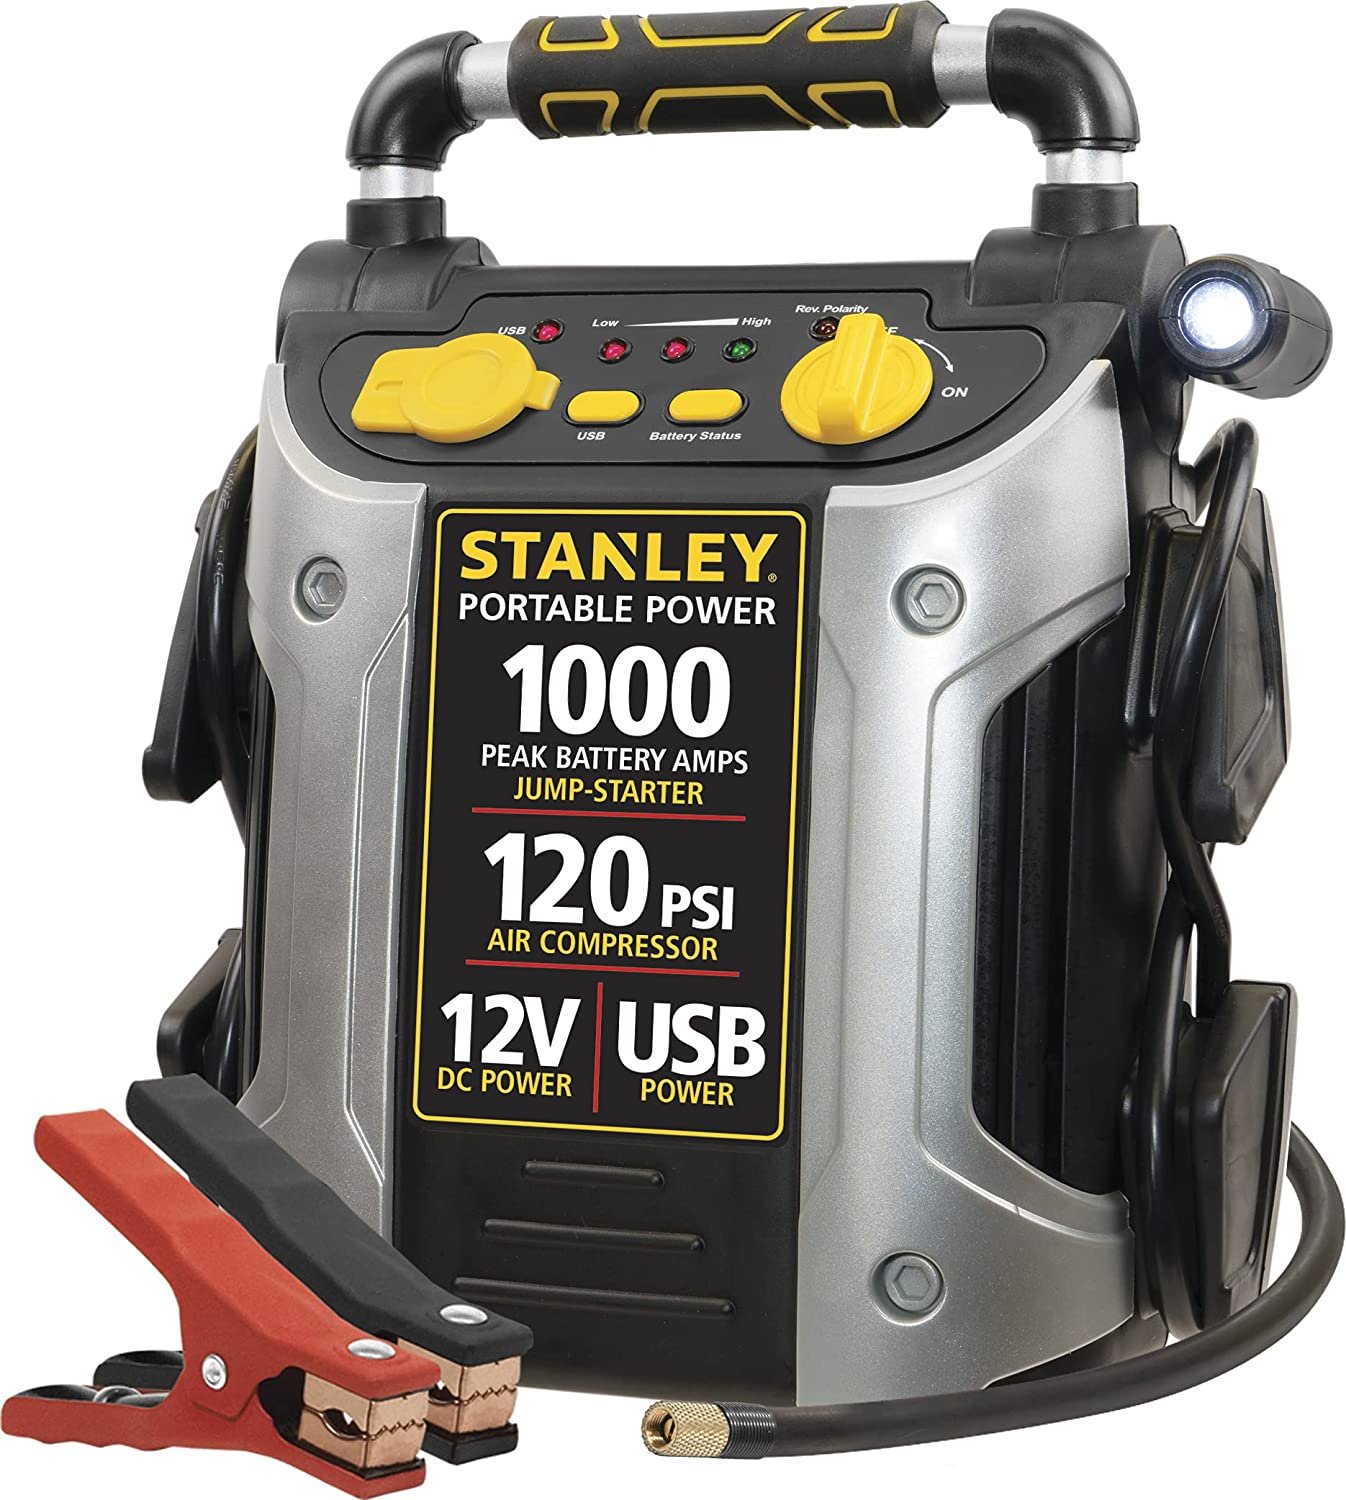 STANLEY J5C09 Portable Power Station Jump Starter, 1000 Peak Amp Battery Booster